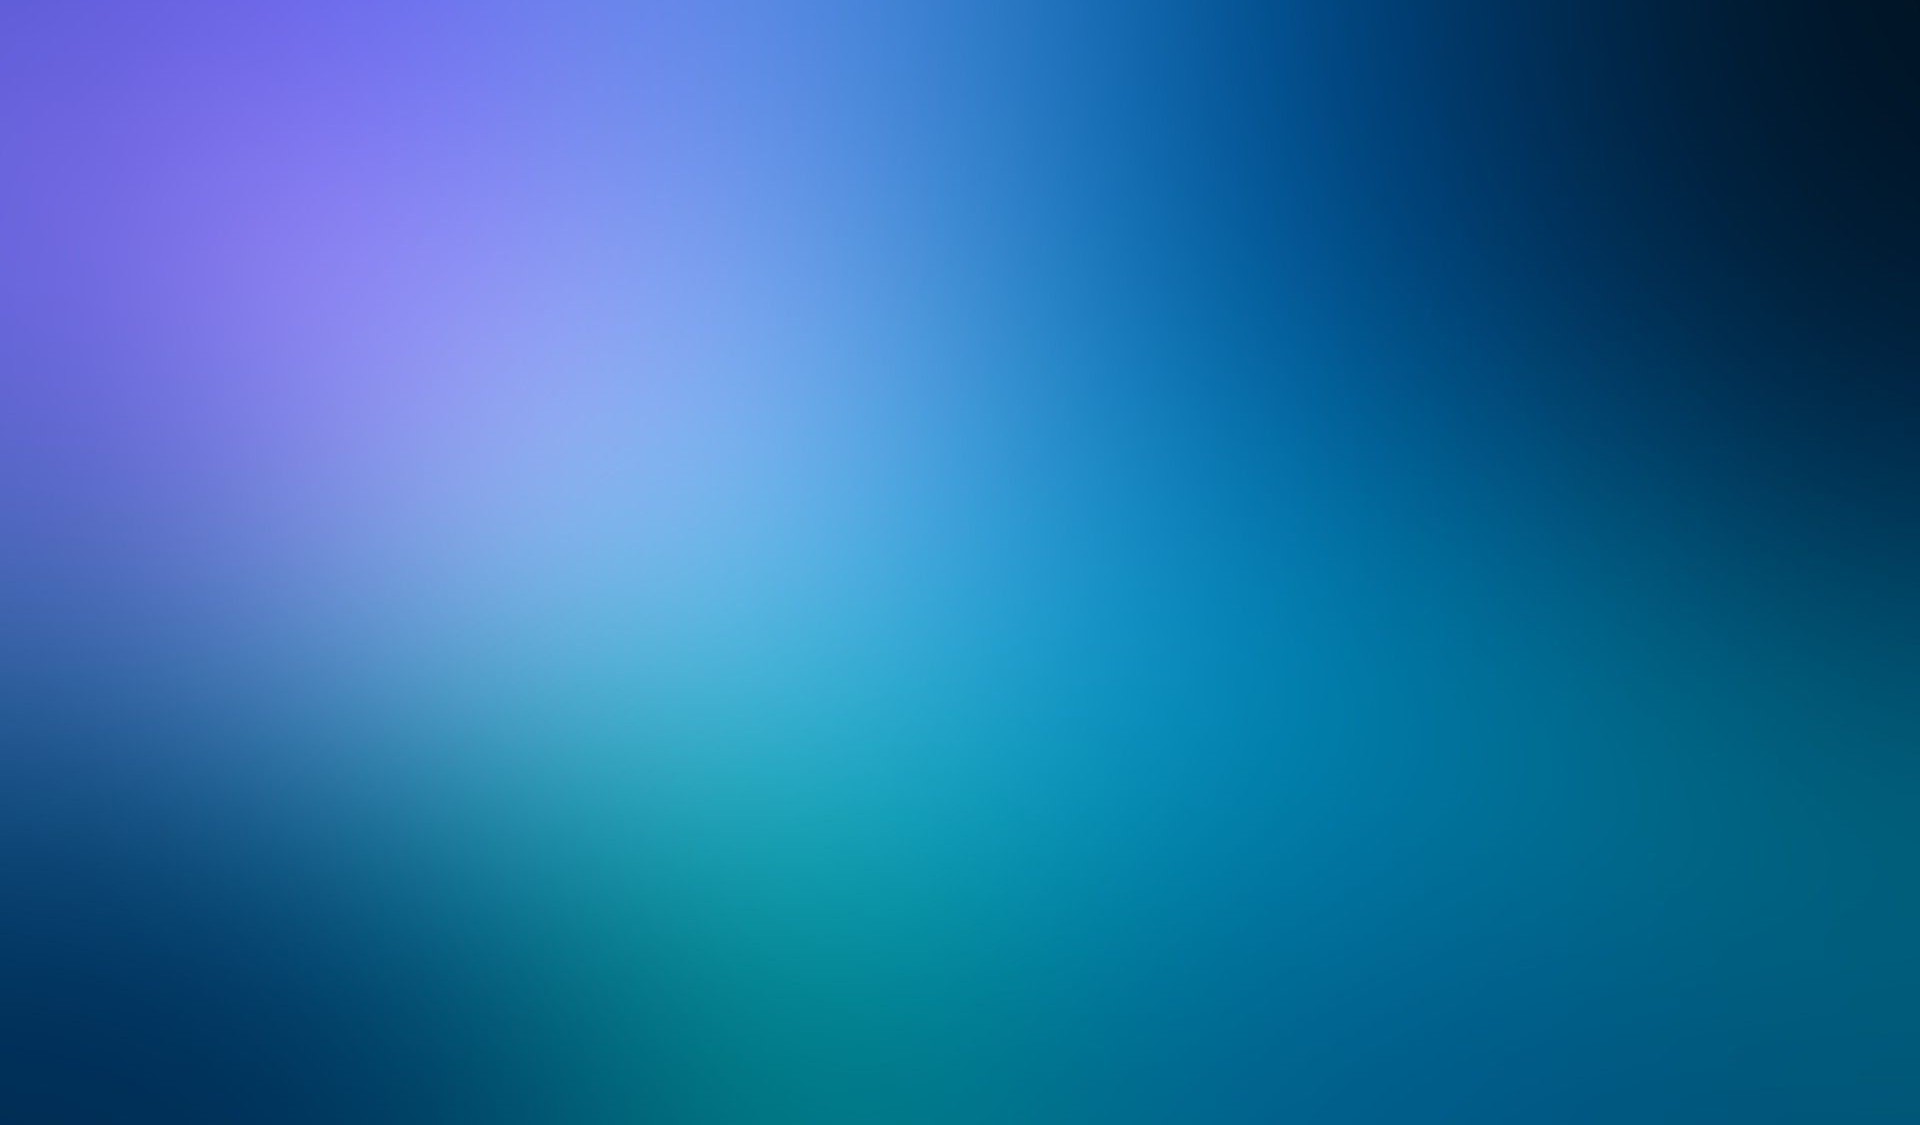 عکس جذاب و جدید از گرادینت با ترکیب رنگ آبی 